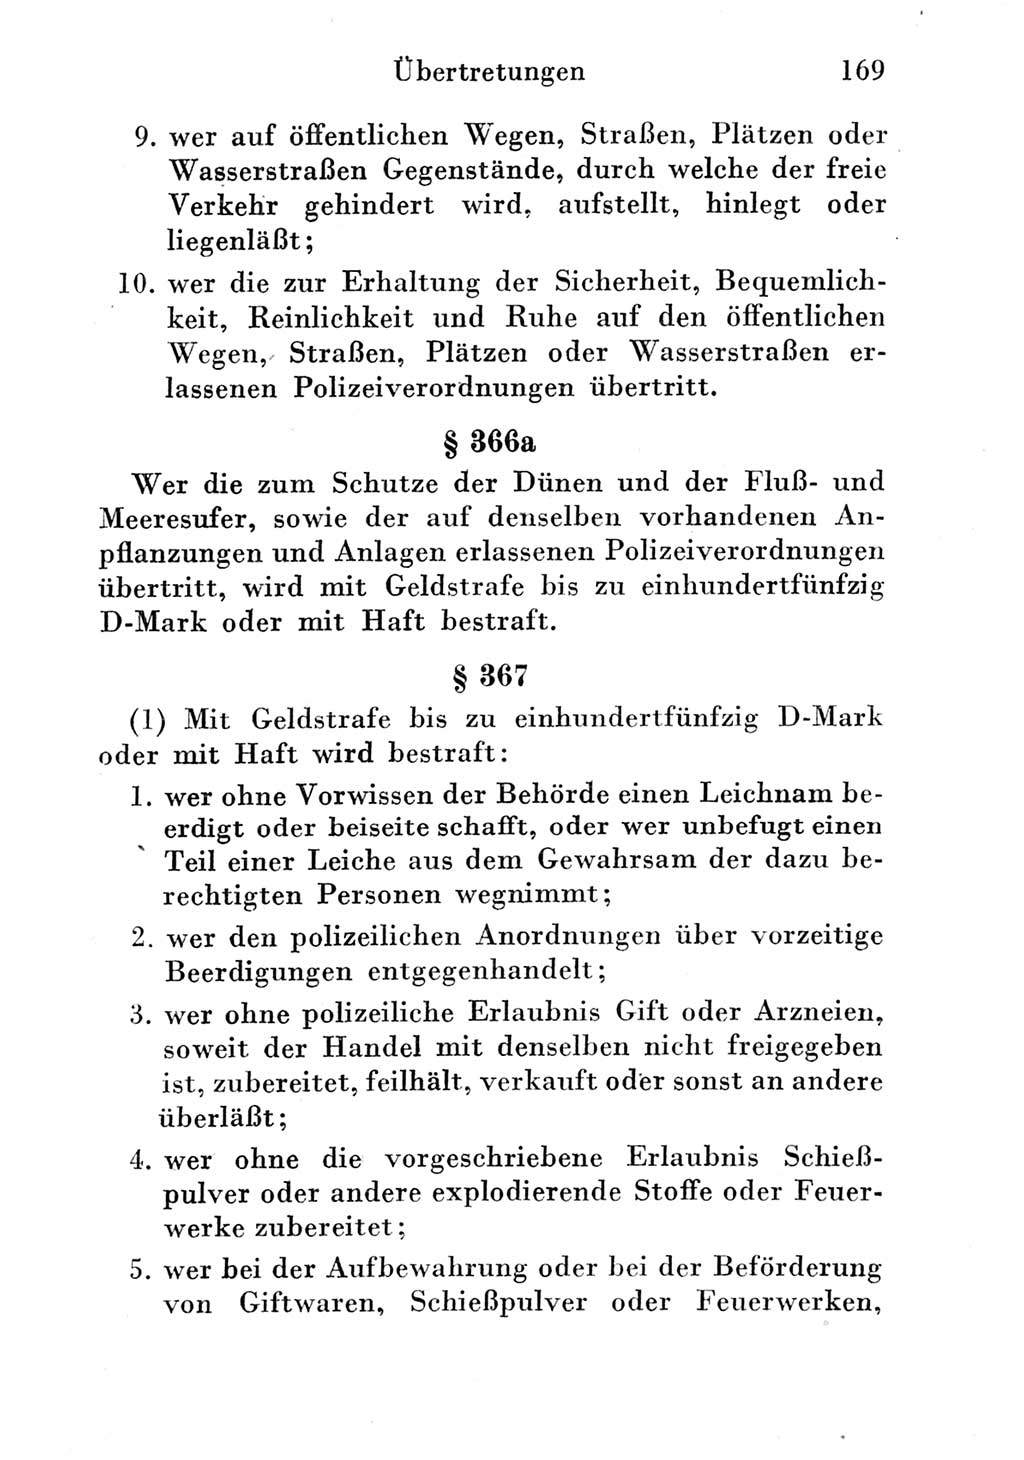 Strafgesetzbuch (StGB) und andere Strafgesetze [Deutsche Demokratische Republik (DDR)] 1951, Seite 169 (StGB Strafges. DDR 1951, S. 169)